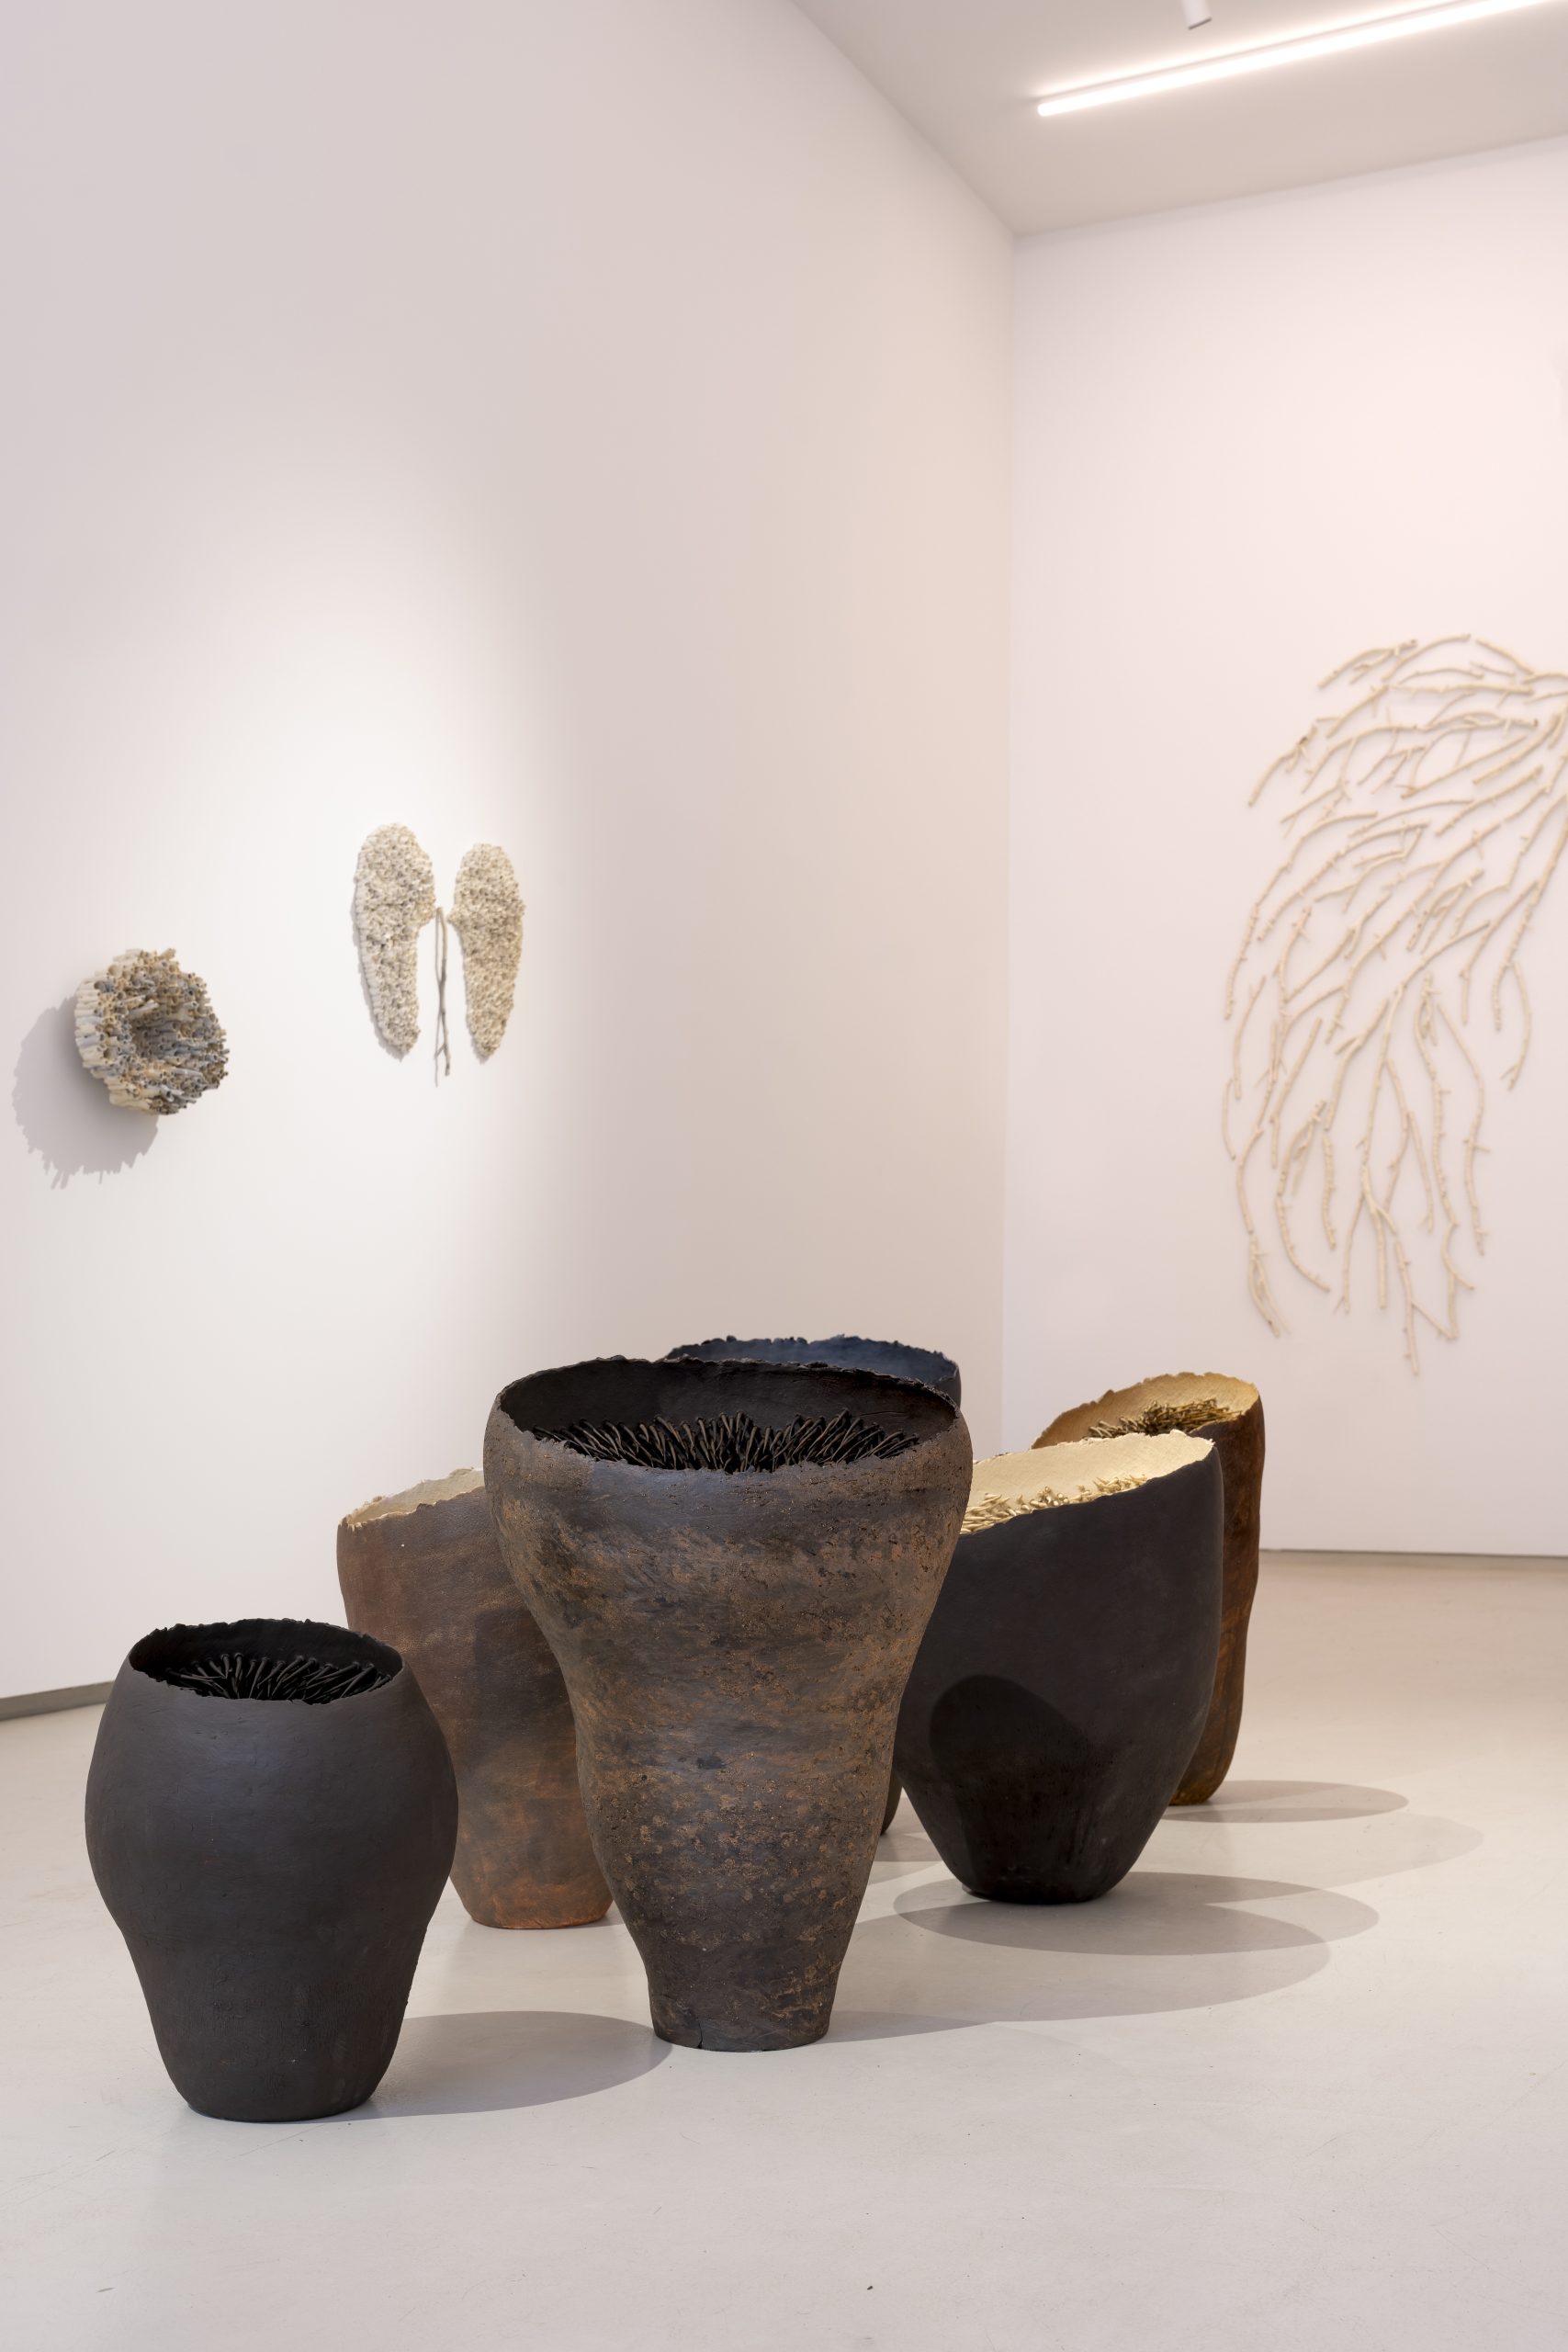 Lucia Leuci, La ragazza di città, 2020, exhibition view, TEMPESTA gallery, Milan